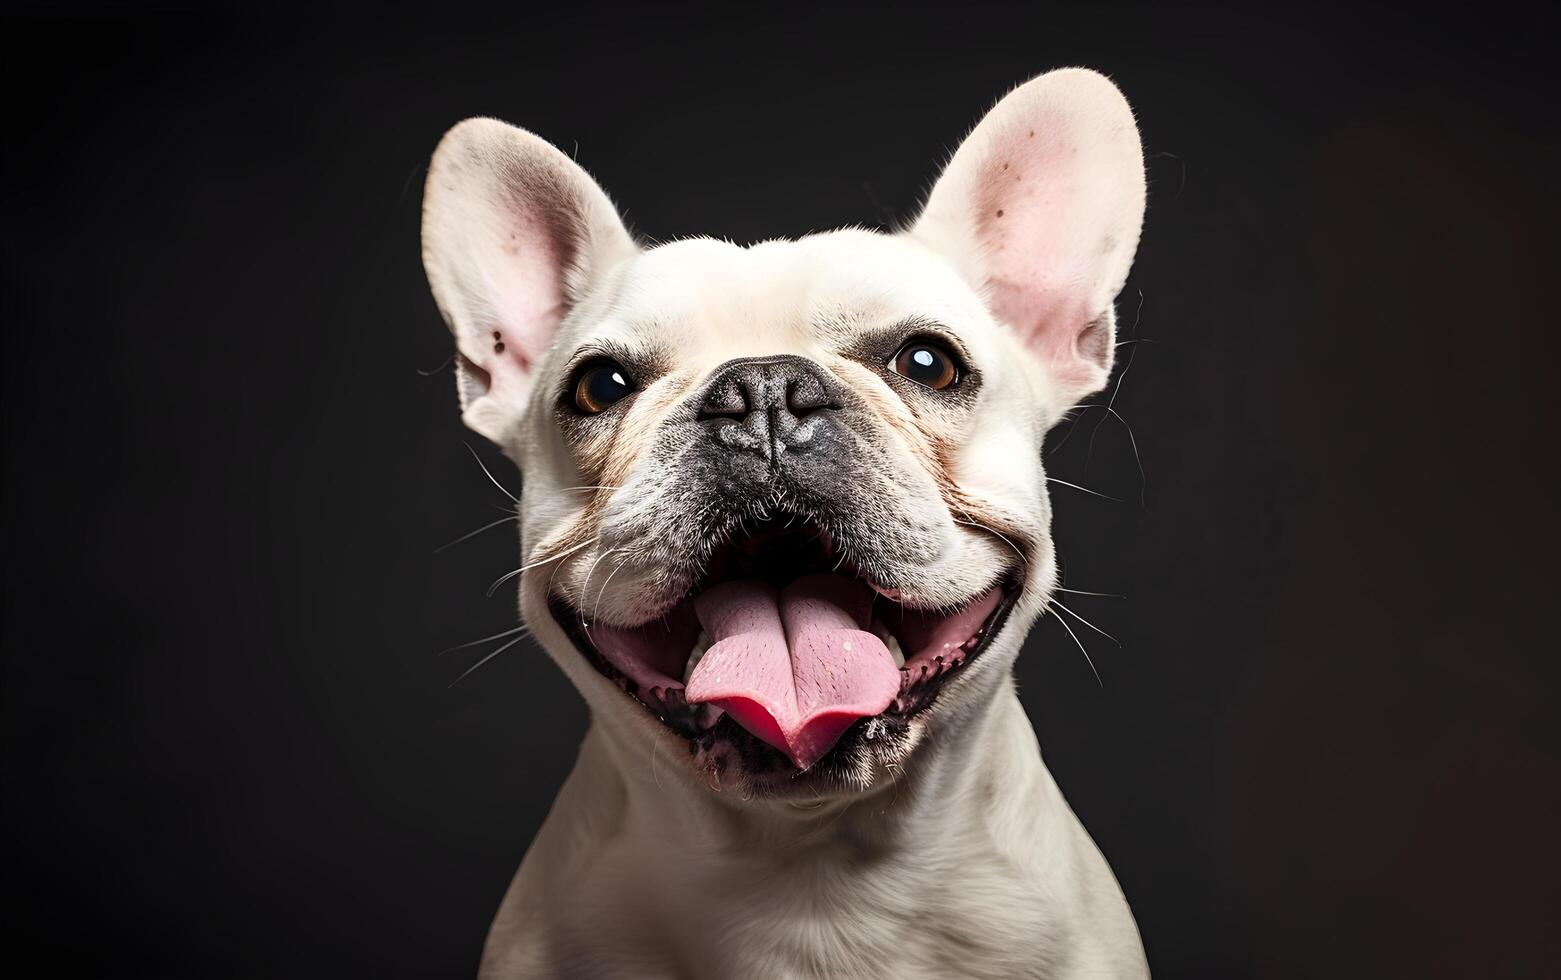 Frans bulldog hond dat heeft geopend haar mond en stokjes uit haar tong foto